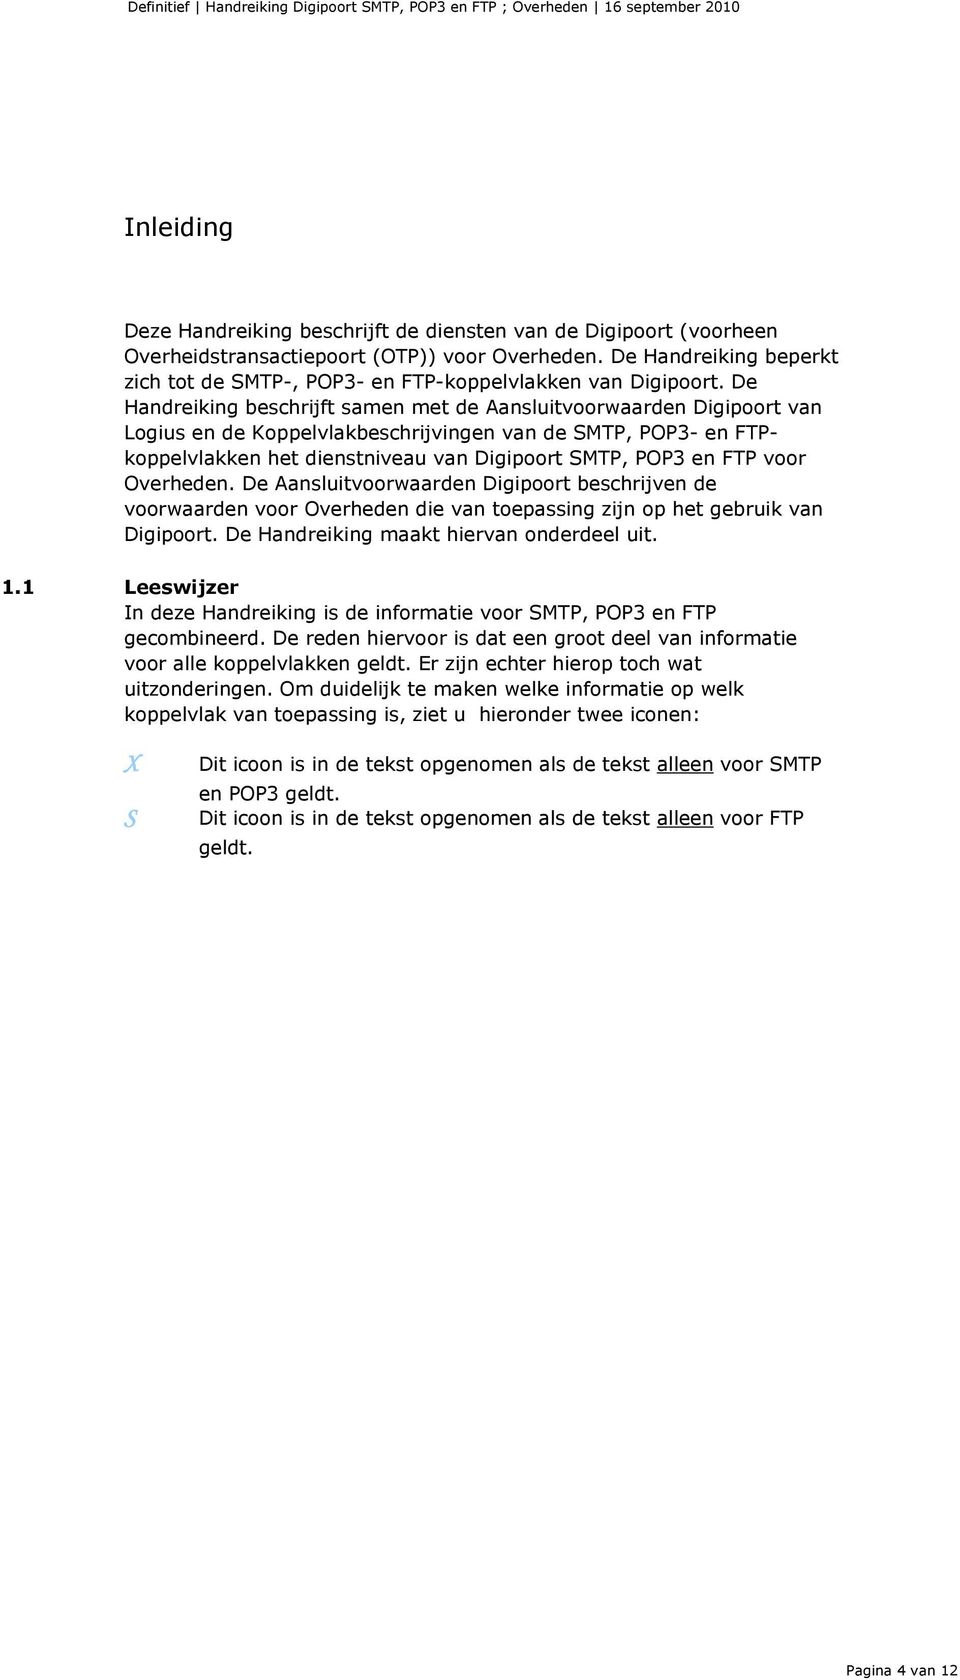 De Handreiking beschrijft samen met de Aansluitvoorwaarden Digipoort van Logius en de Koppelvlakbeschrijvingen van de SMTP, POP3- en FTPkoppelvlakken het dienstniveau van Digipoort SMTP, POP3 en FTP